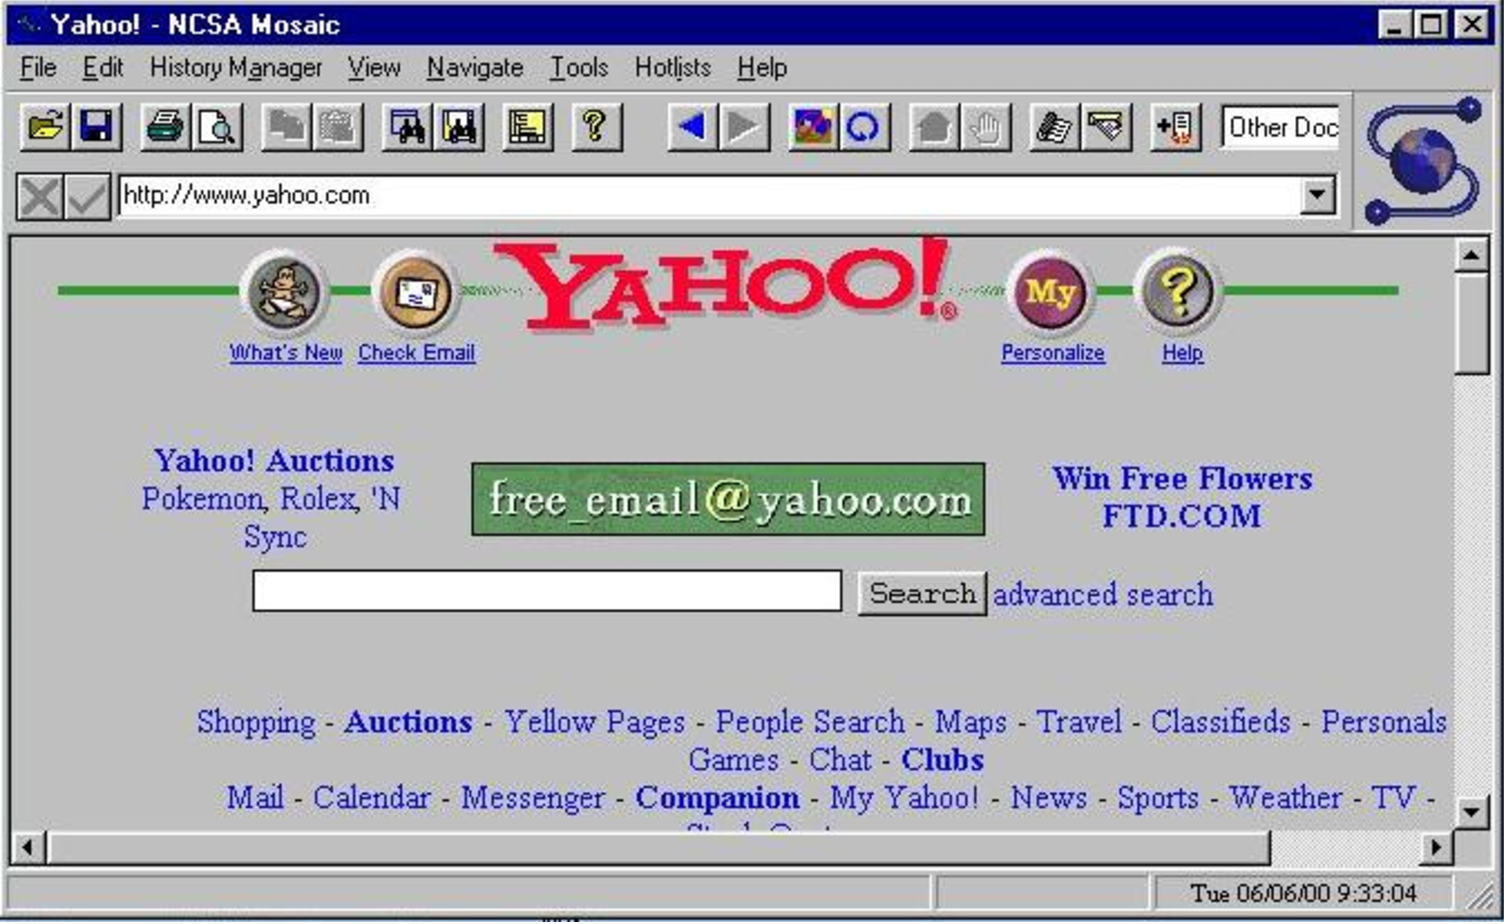 Homepage van Yahoo, browser Mosaic 3.0 